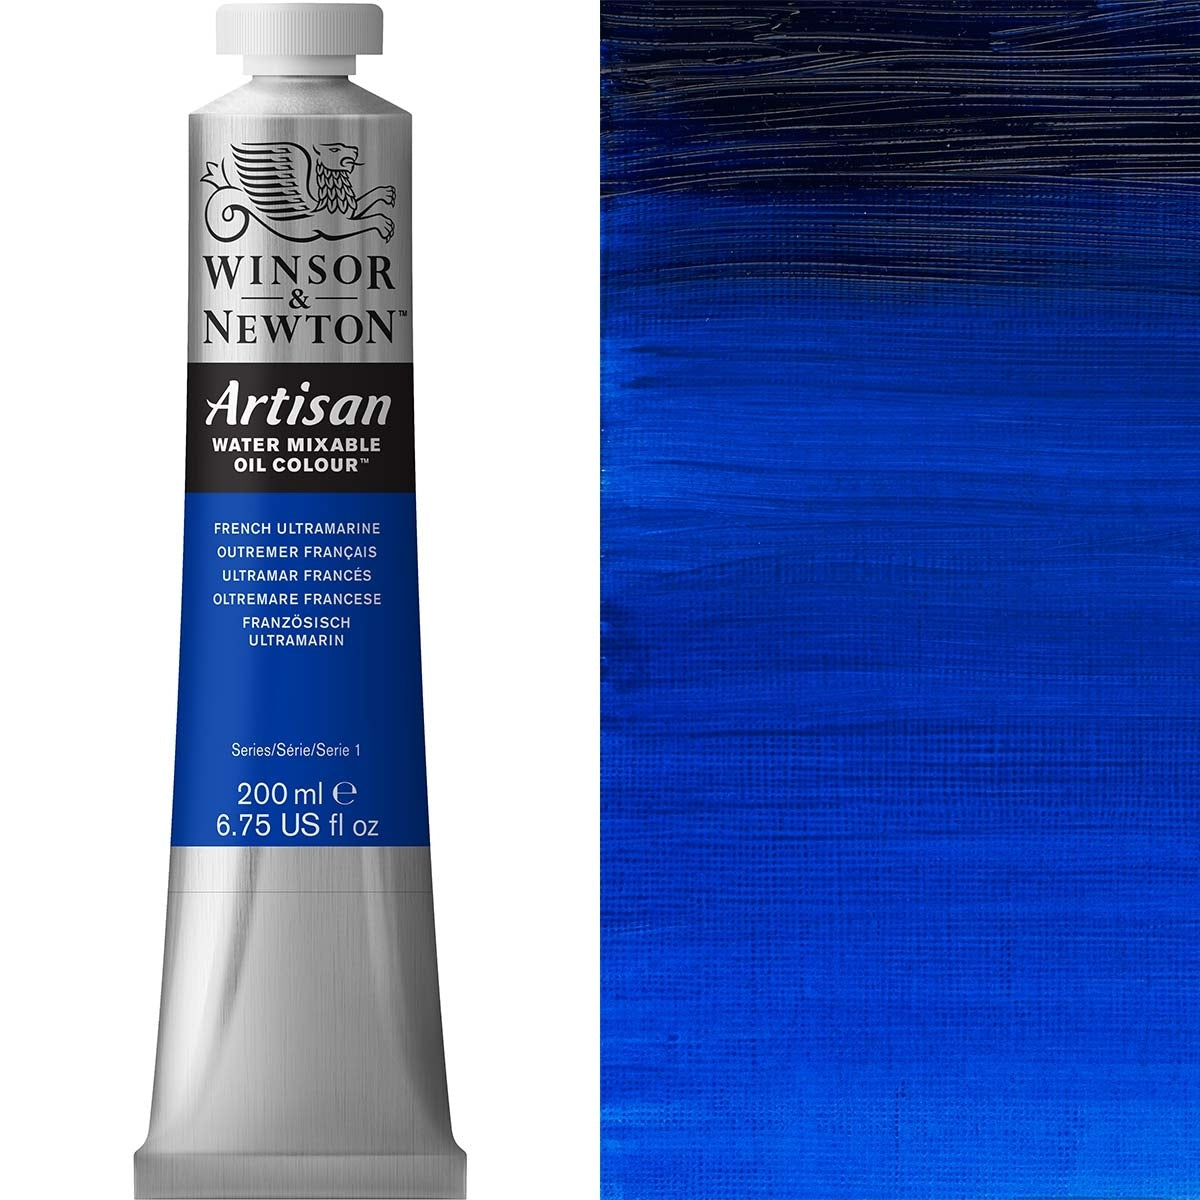 Winsor et Newton - Couleur d'huile artisanale Watermixable - 200 ml - Ultramarine française